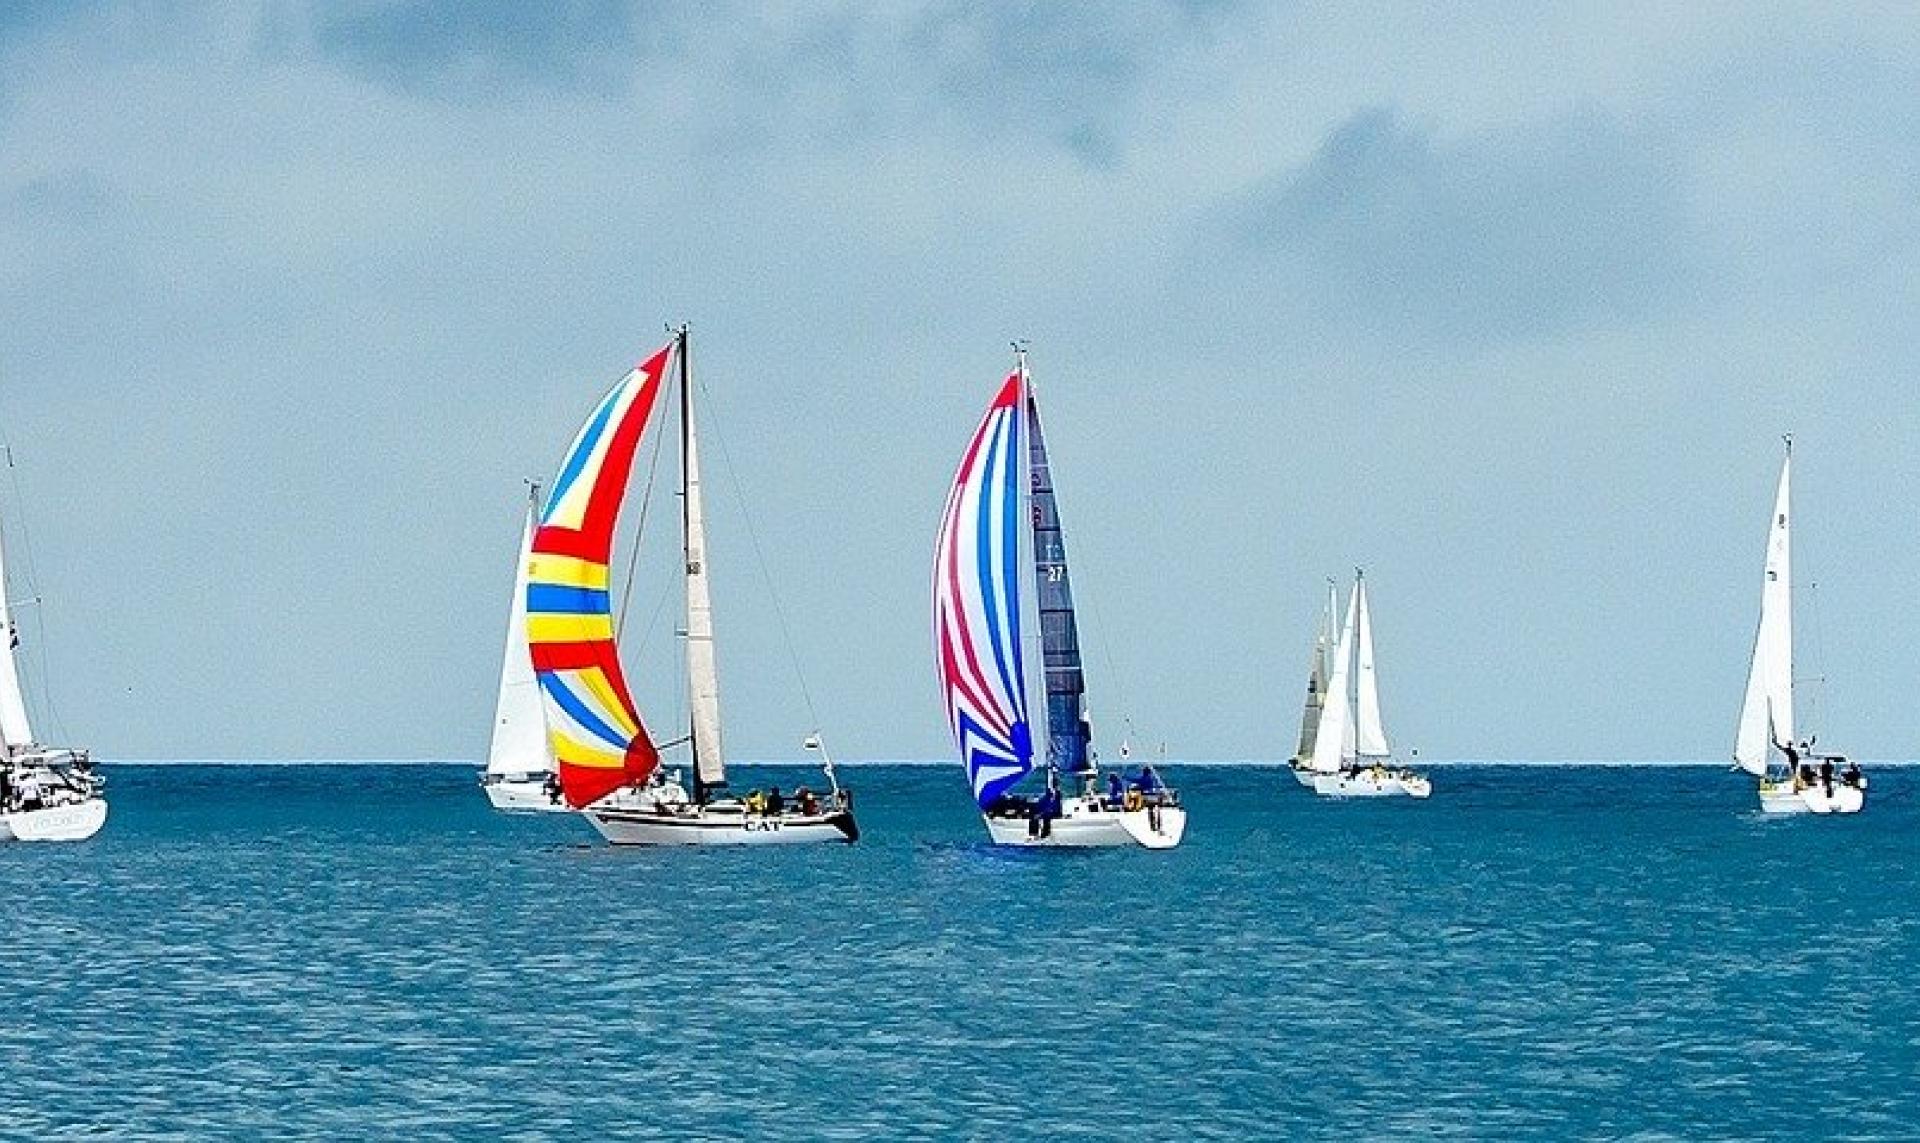 voiles de bateaux aux couleurs de drapeaux 